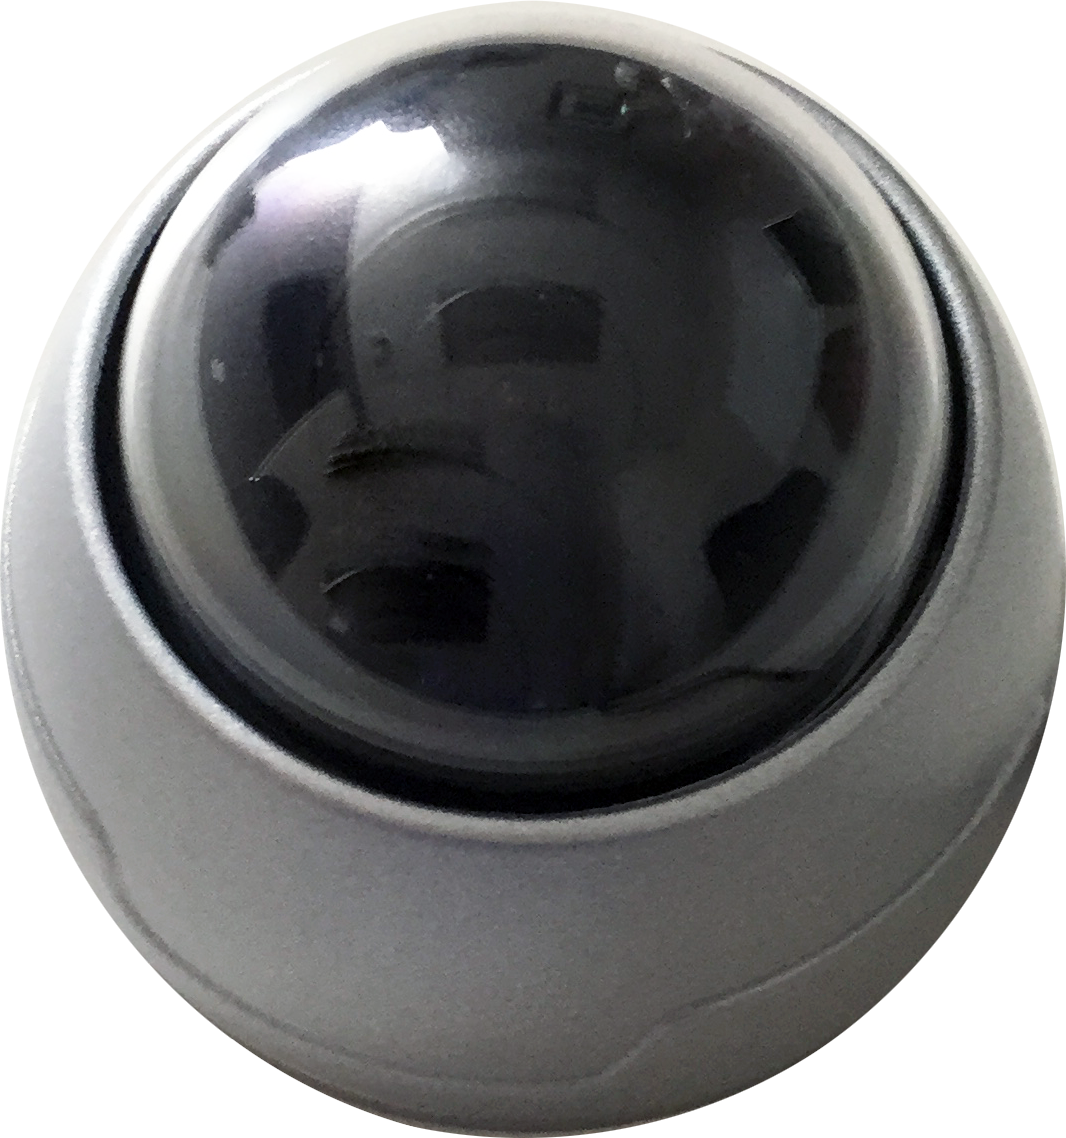 Smart Witness SVA028-C Dome Camera